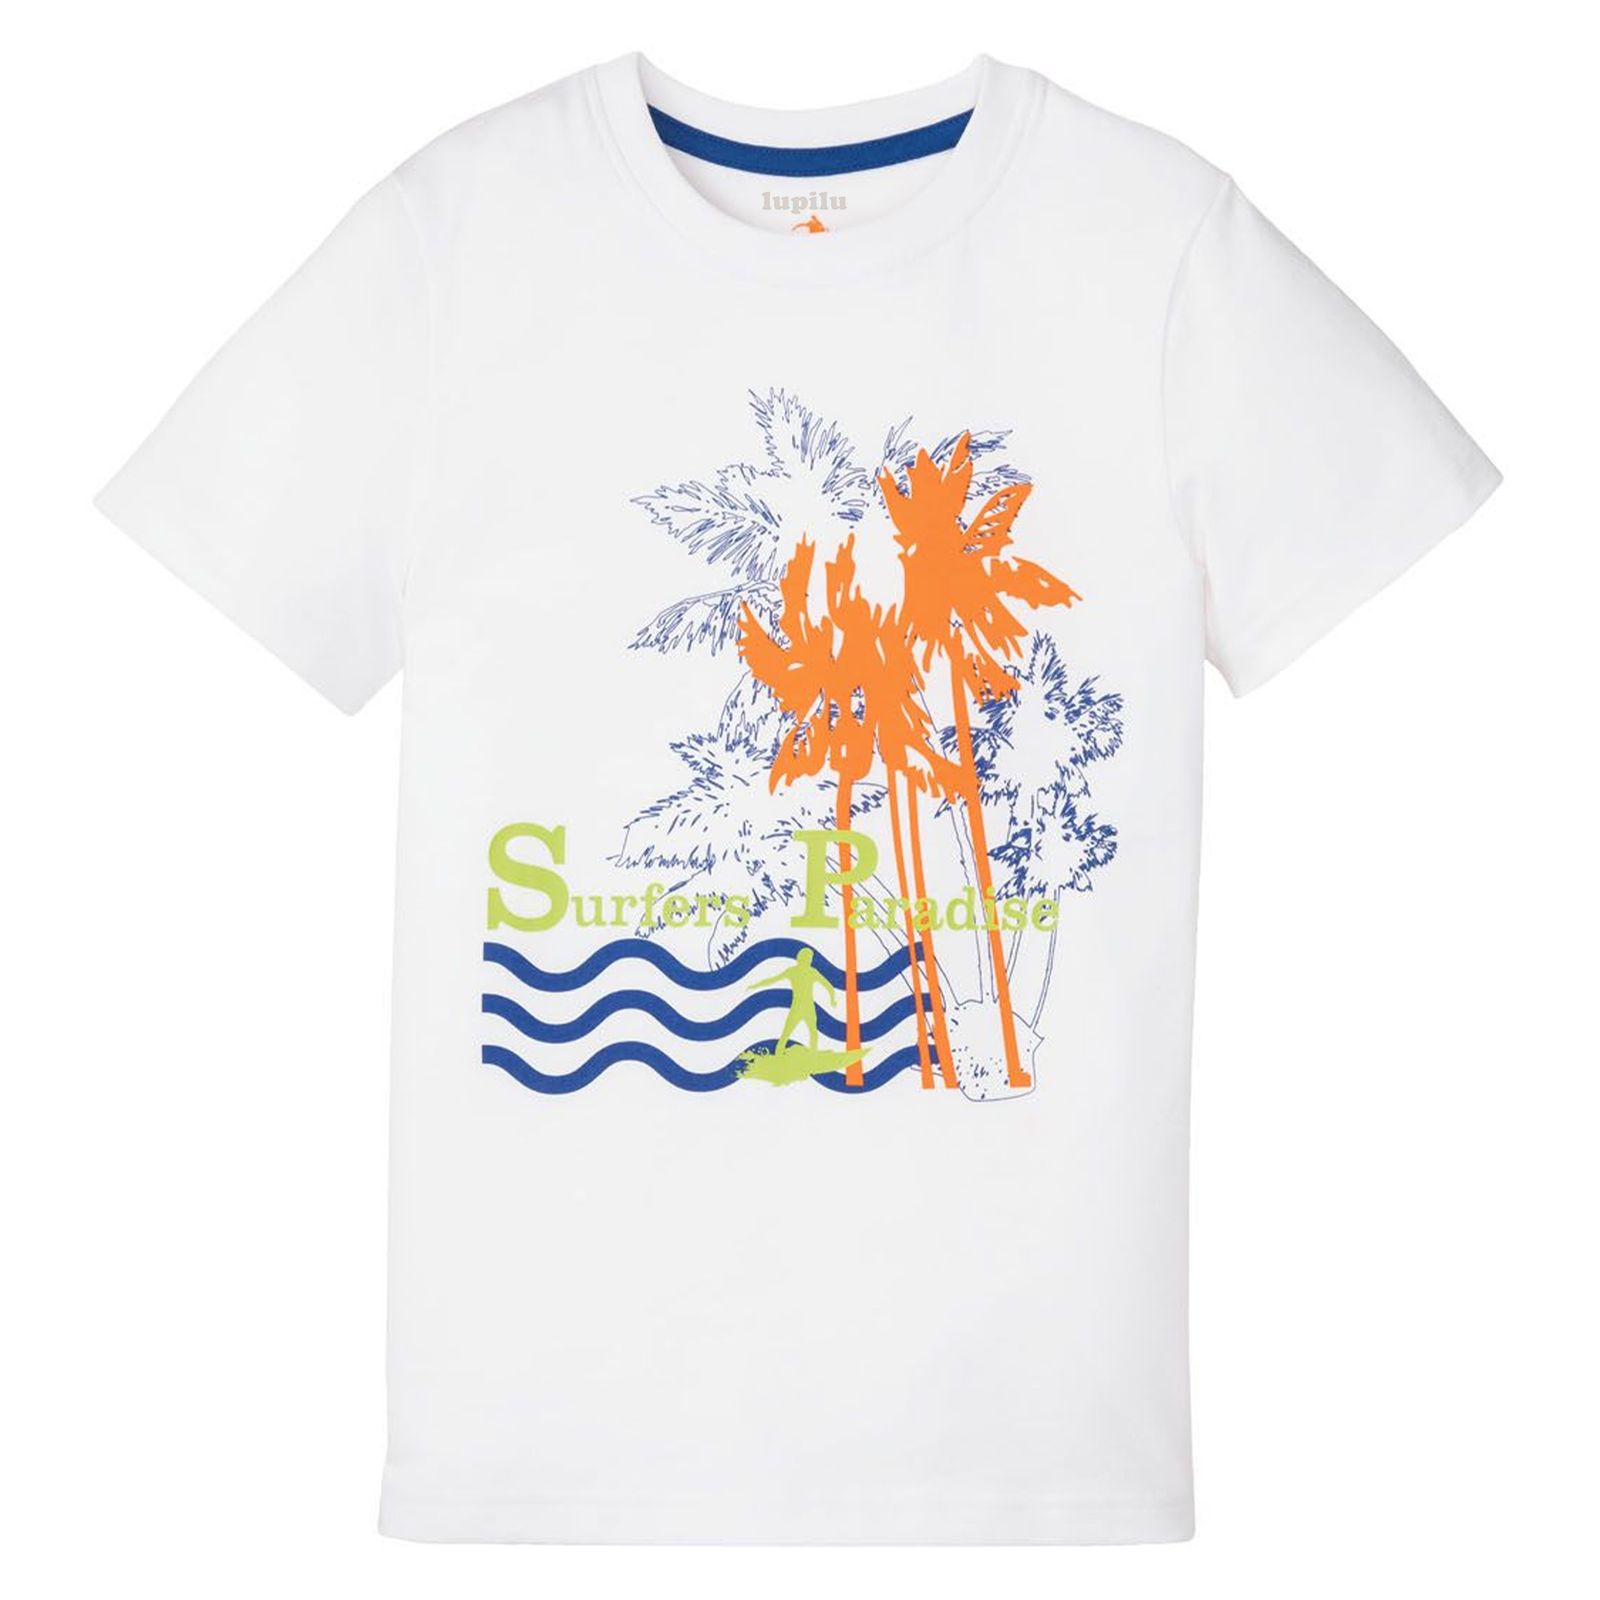 تی شرت آستین کوتاه پسرانه پیپرتس مدل Surfers Paradise